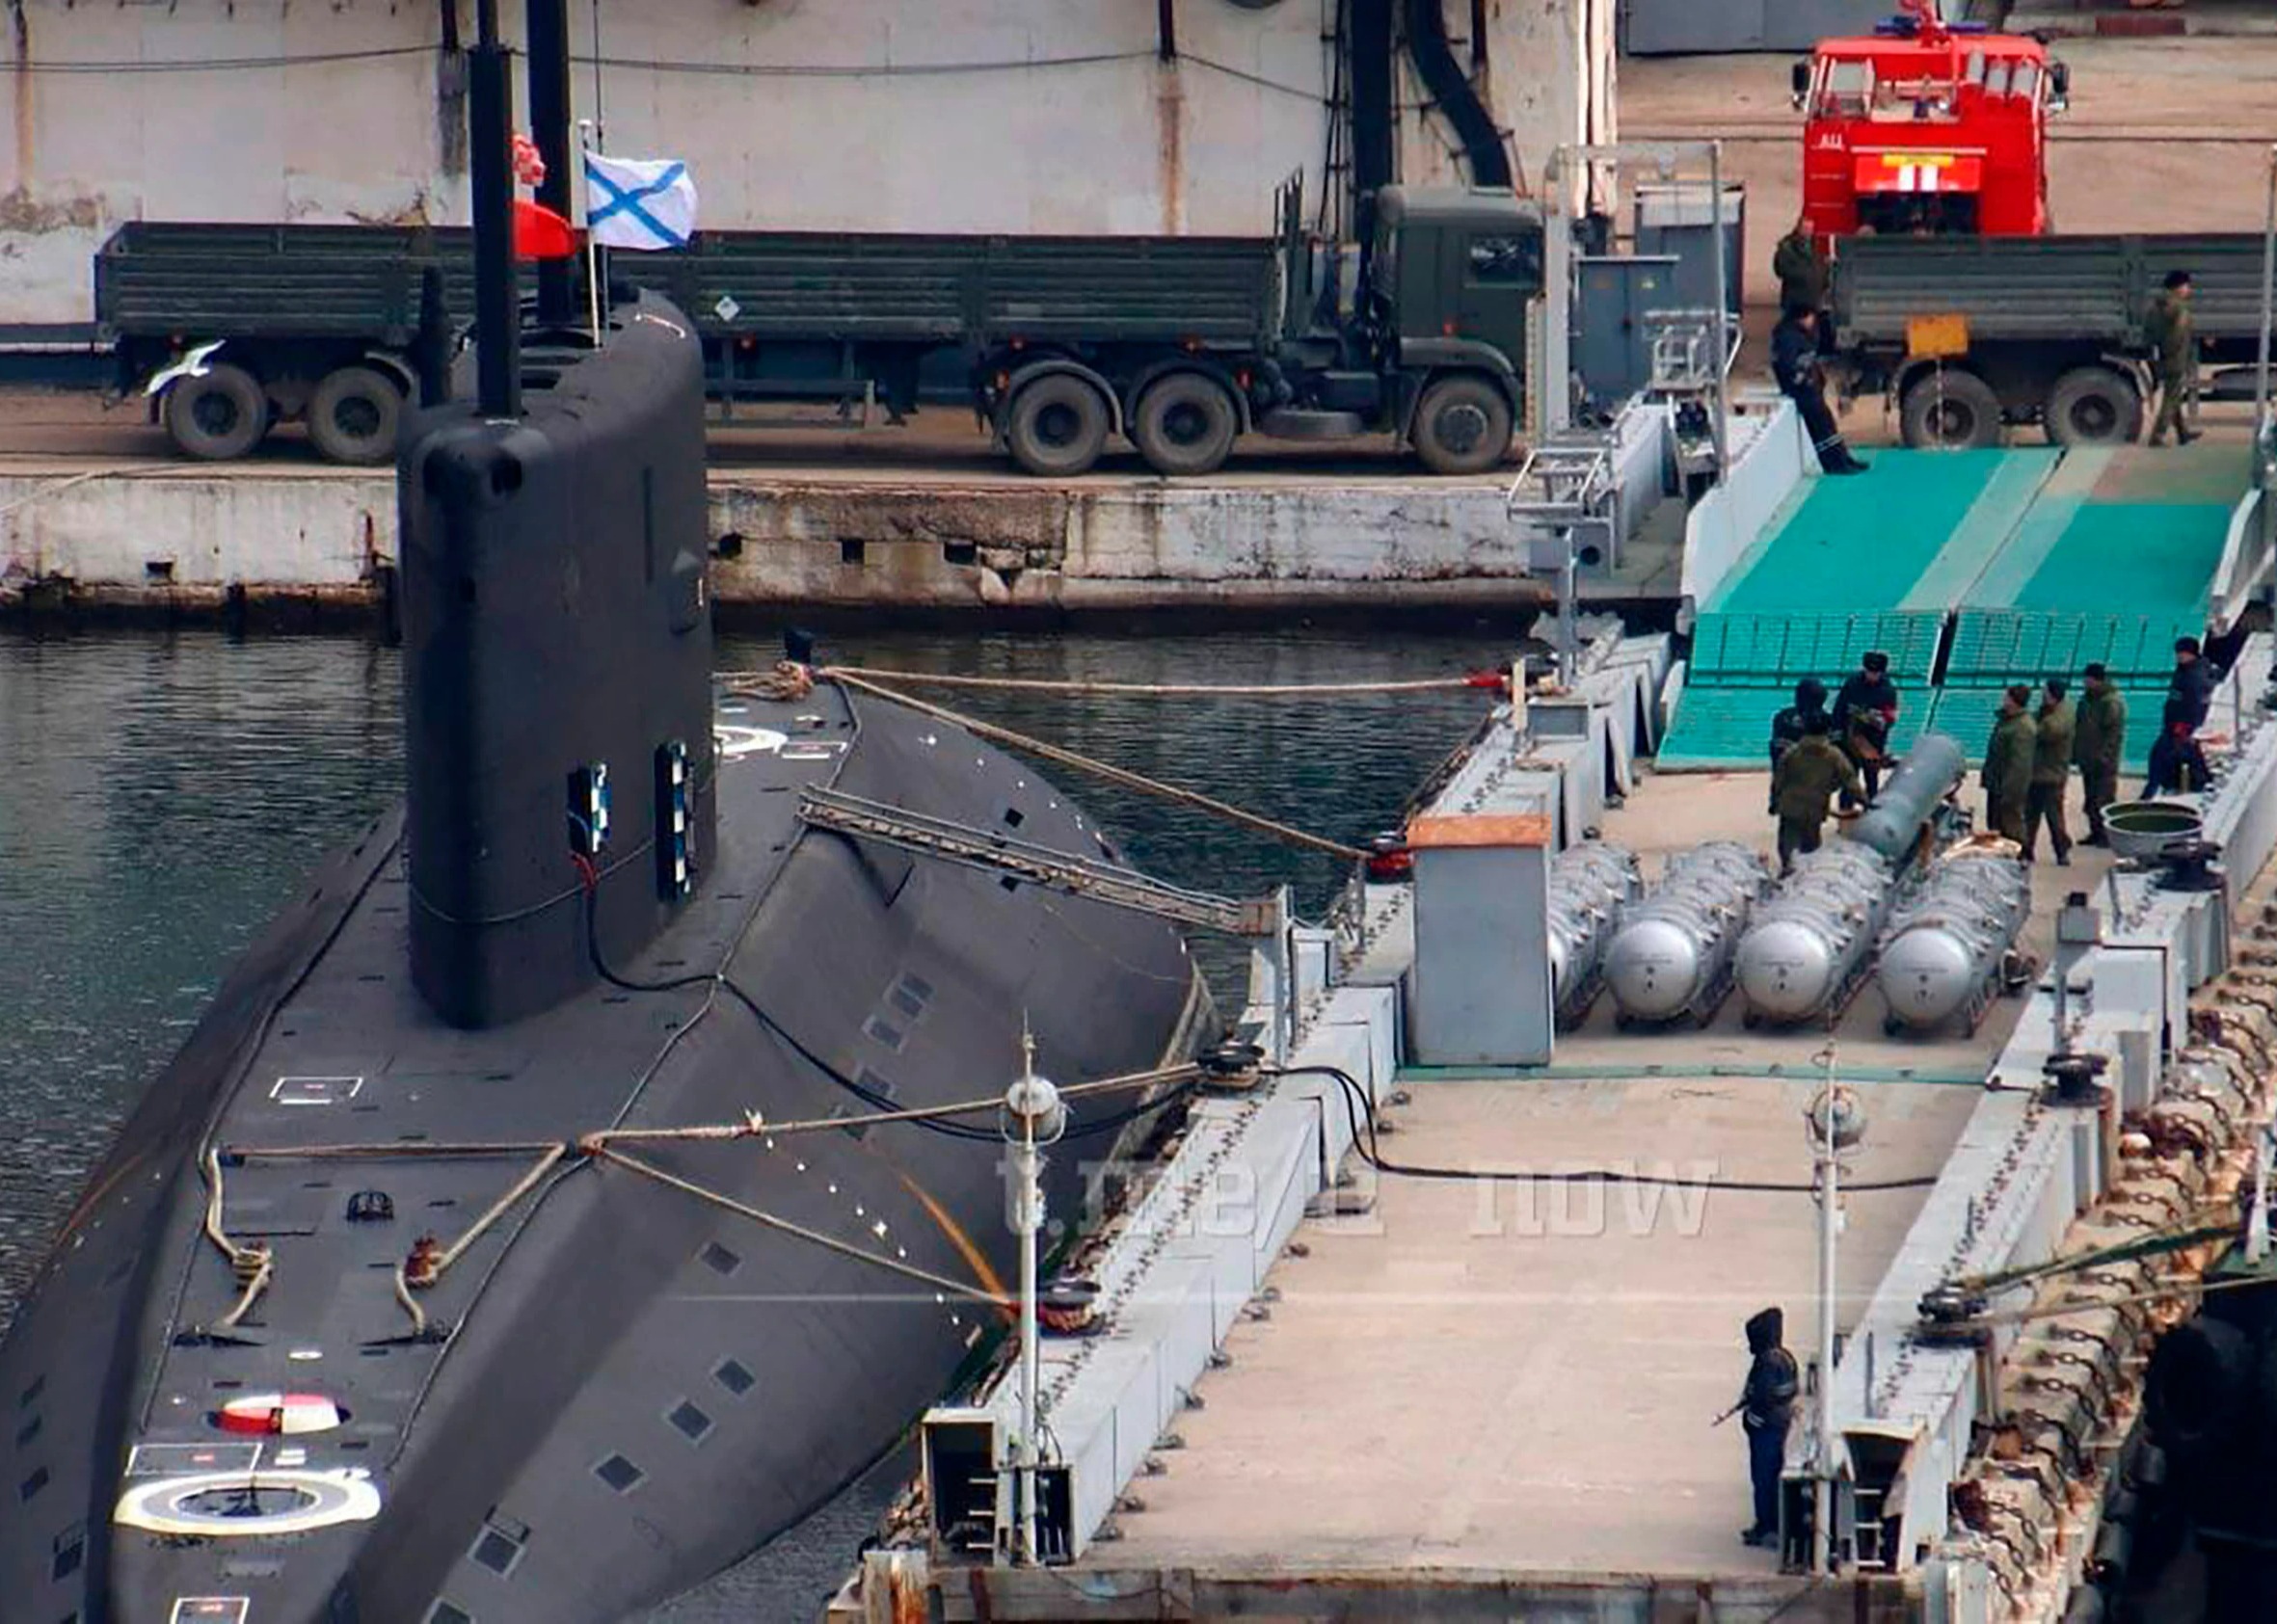 Las fotos publicadas muestran misiles de maniobra de calibre ruso que se cargan en un submarino en Crimea.